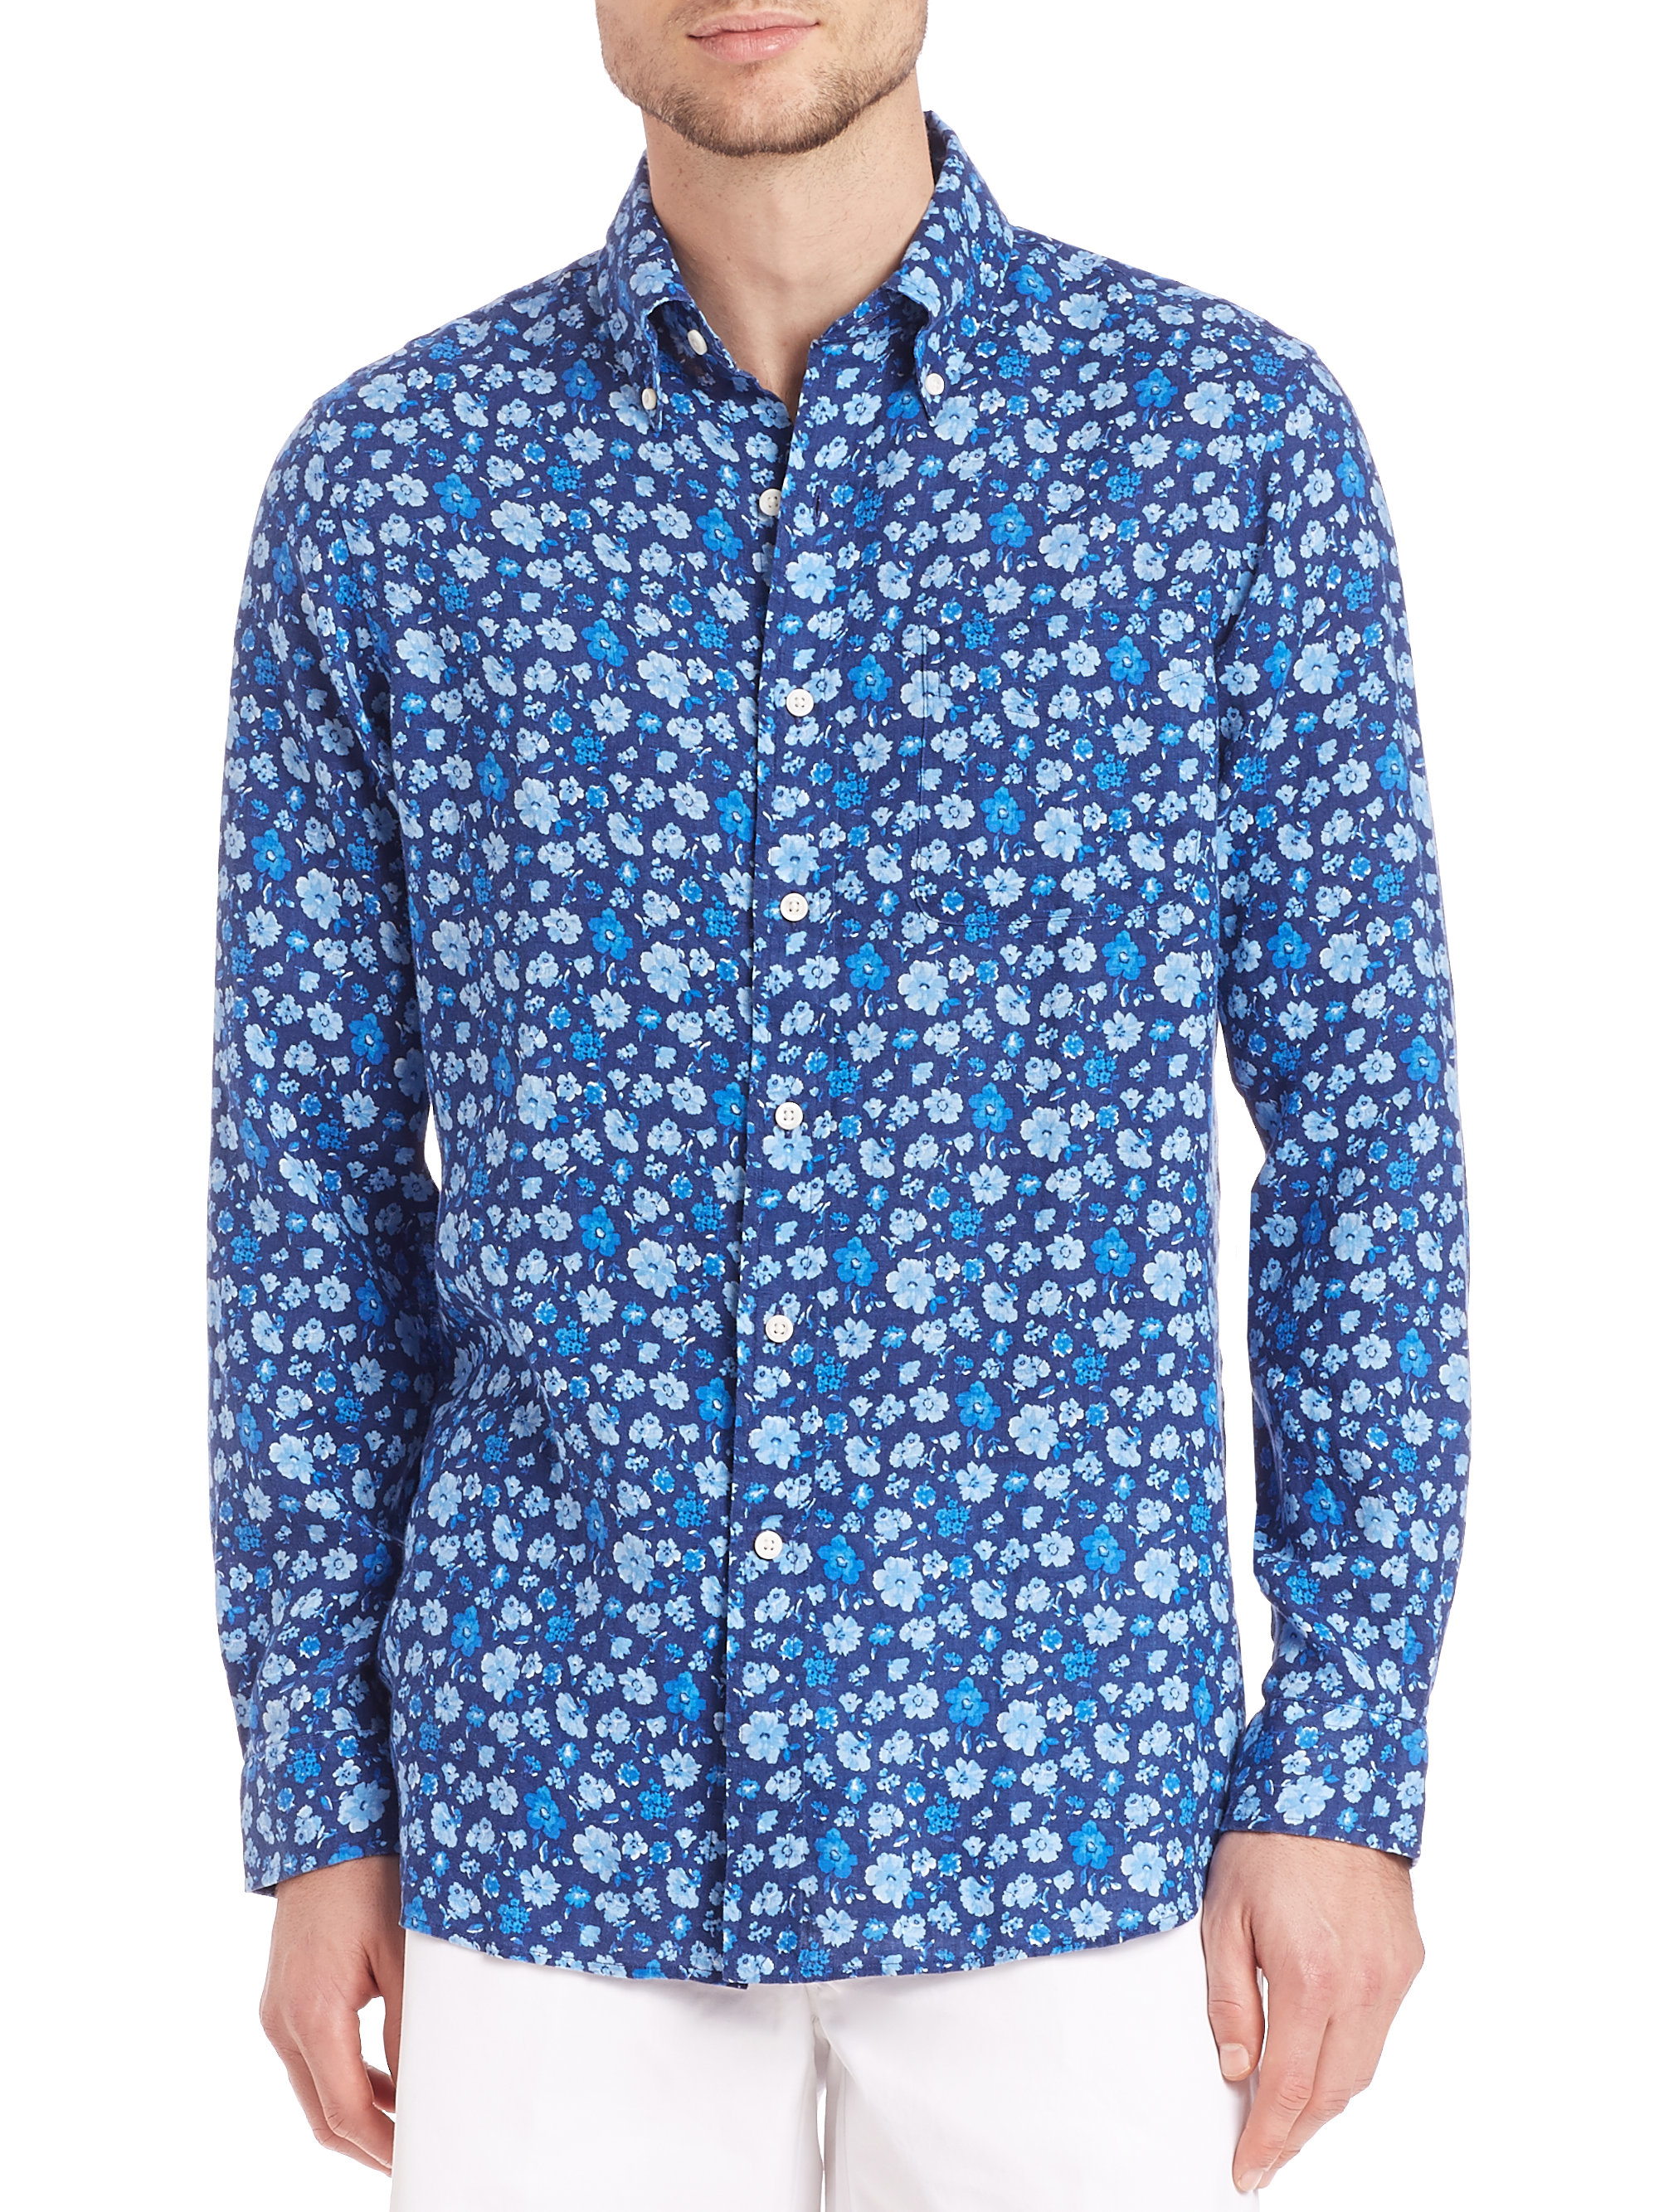 Polo Ralph Lauren Floral Linen Sport Shirt in Blue for Men - Lyst